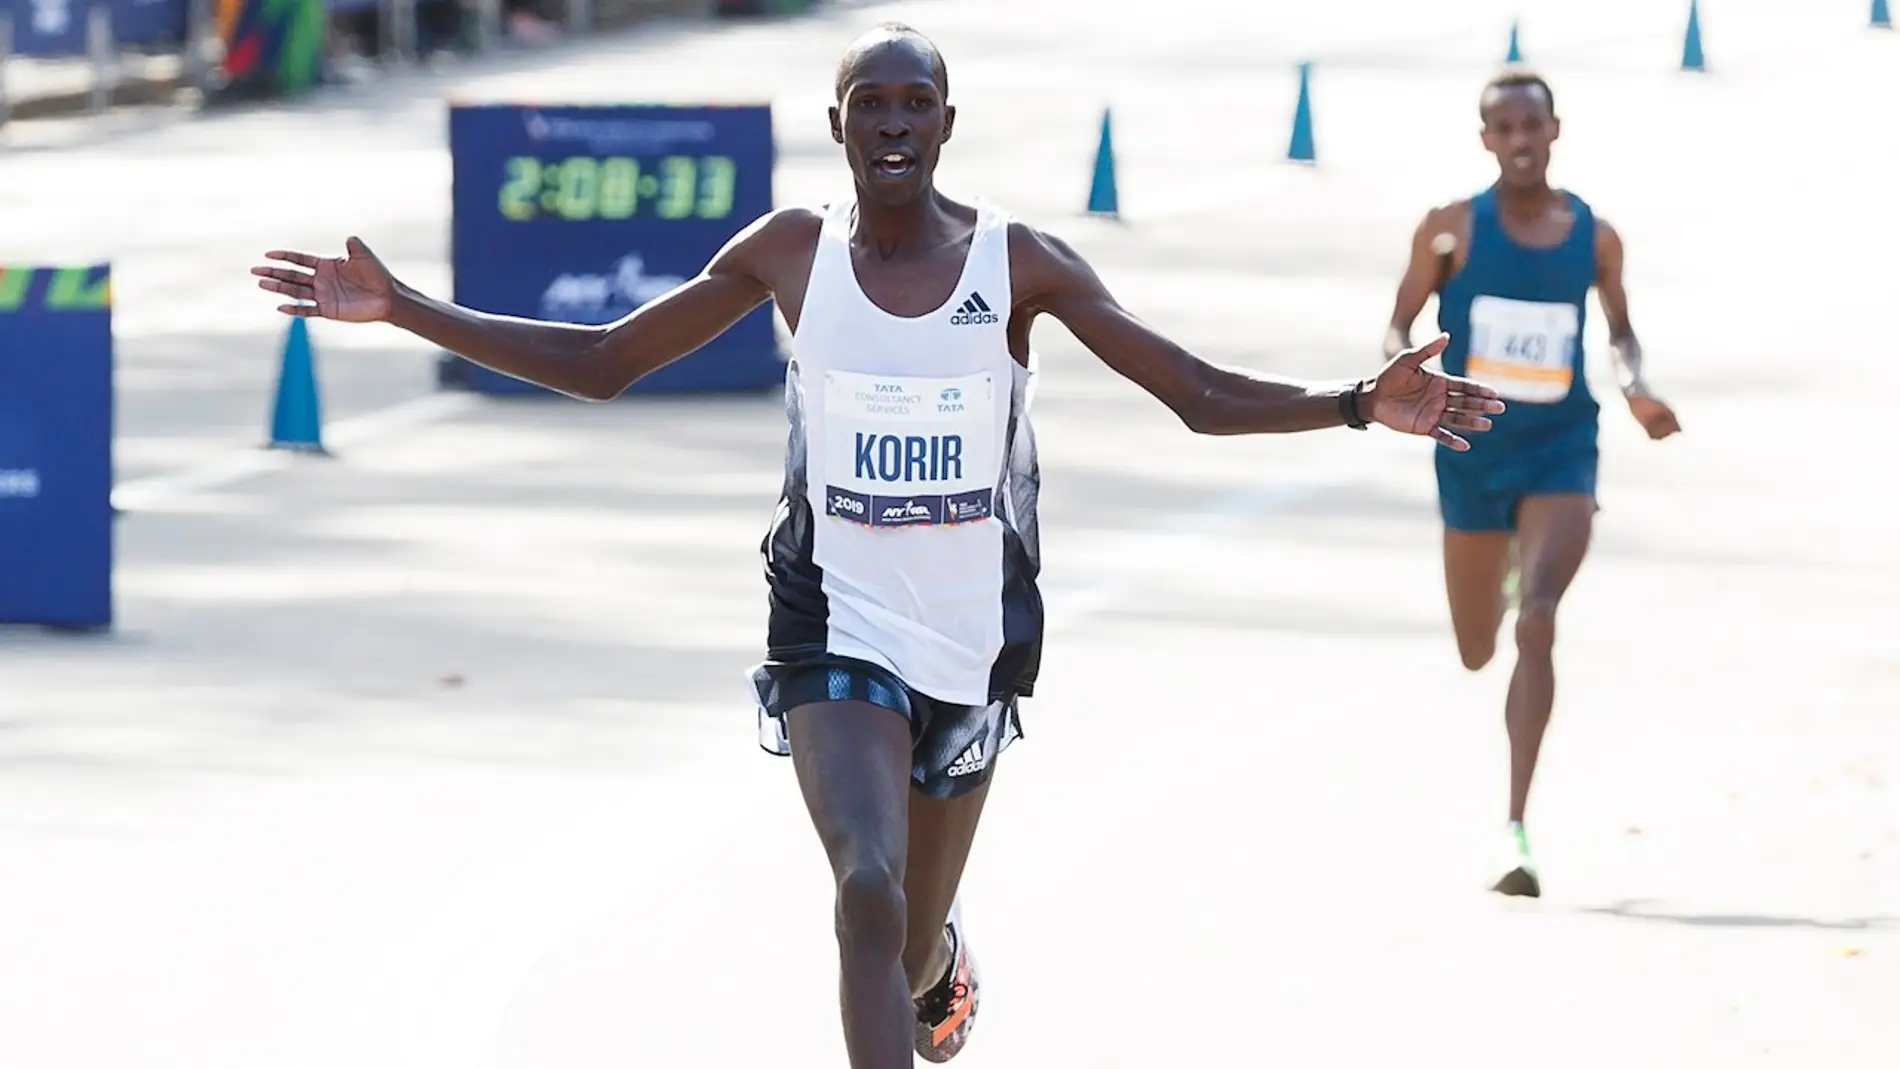 El keniano Albert Korir gana su primer Maratón de Nueva York